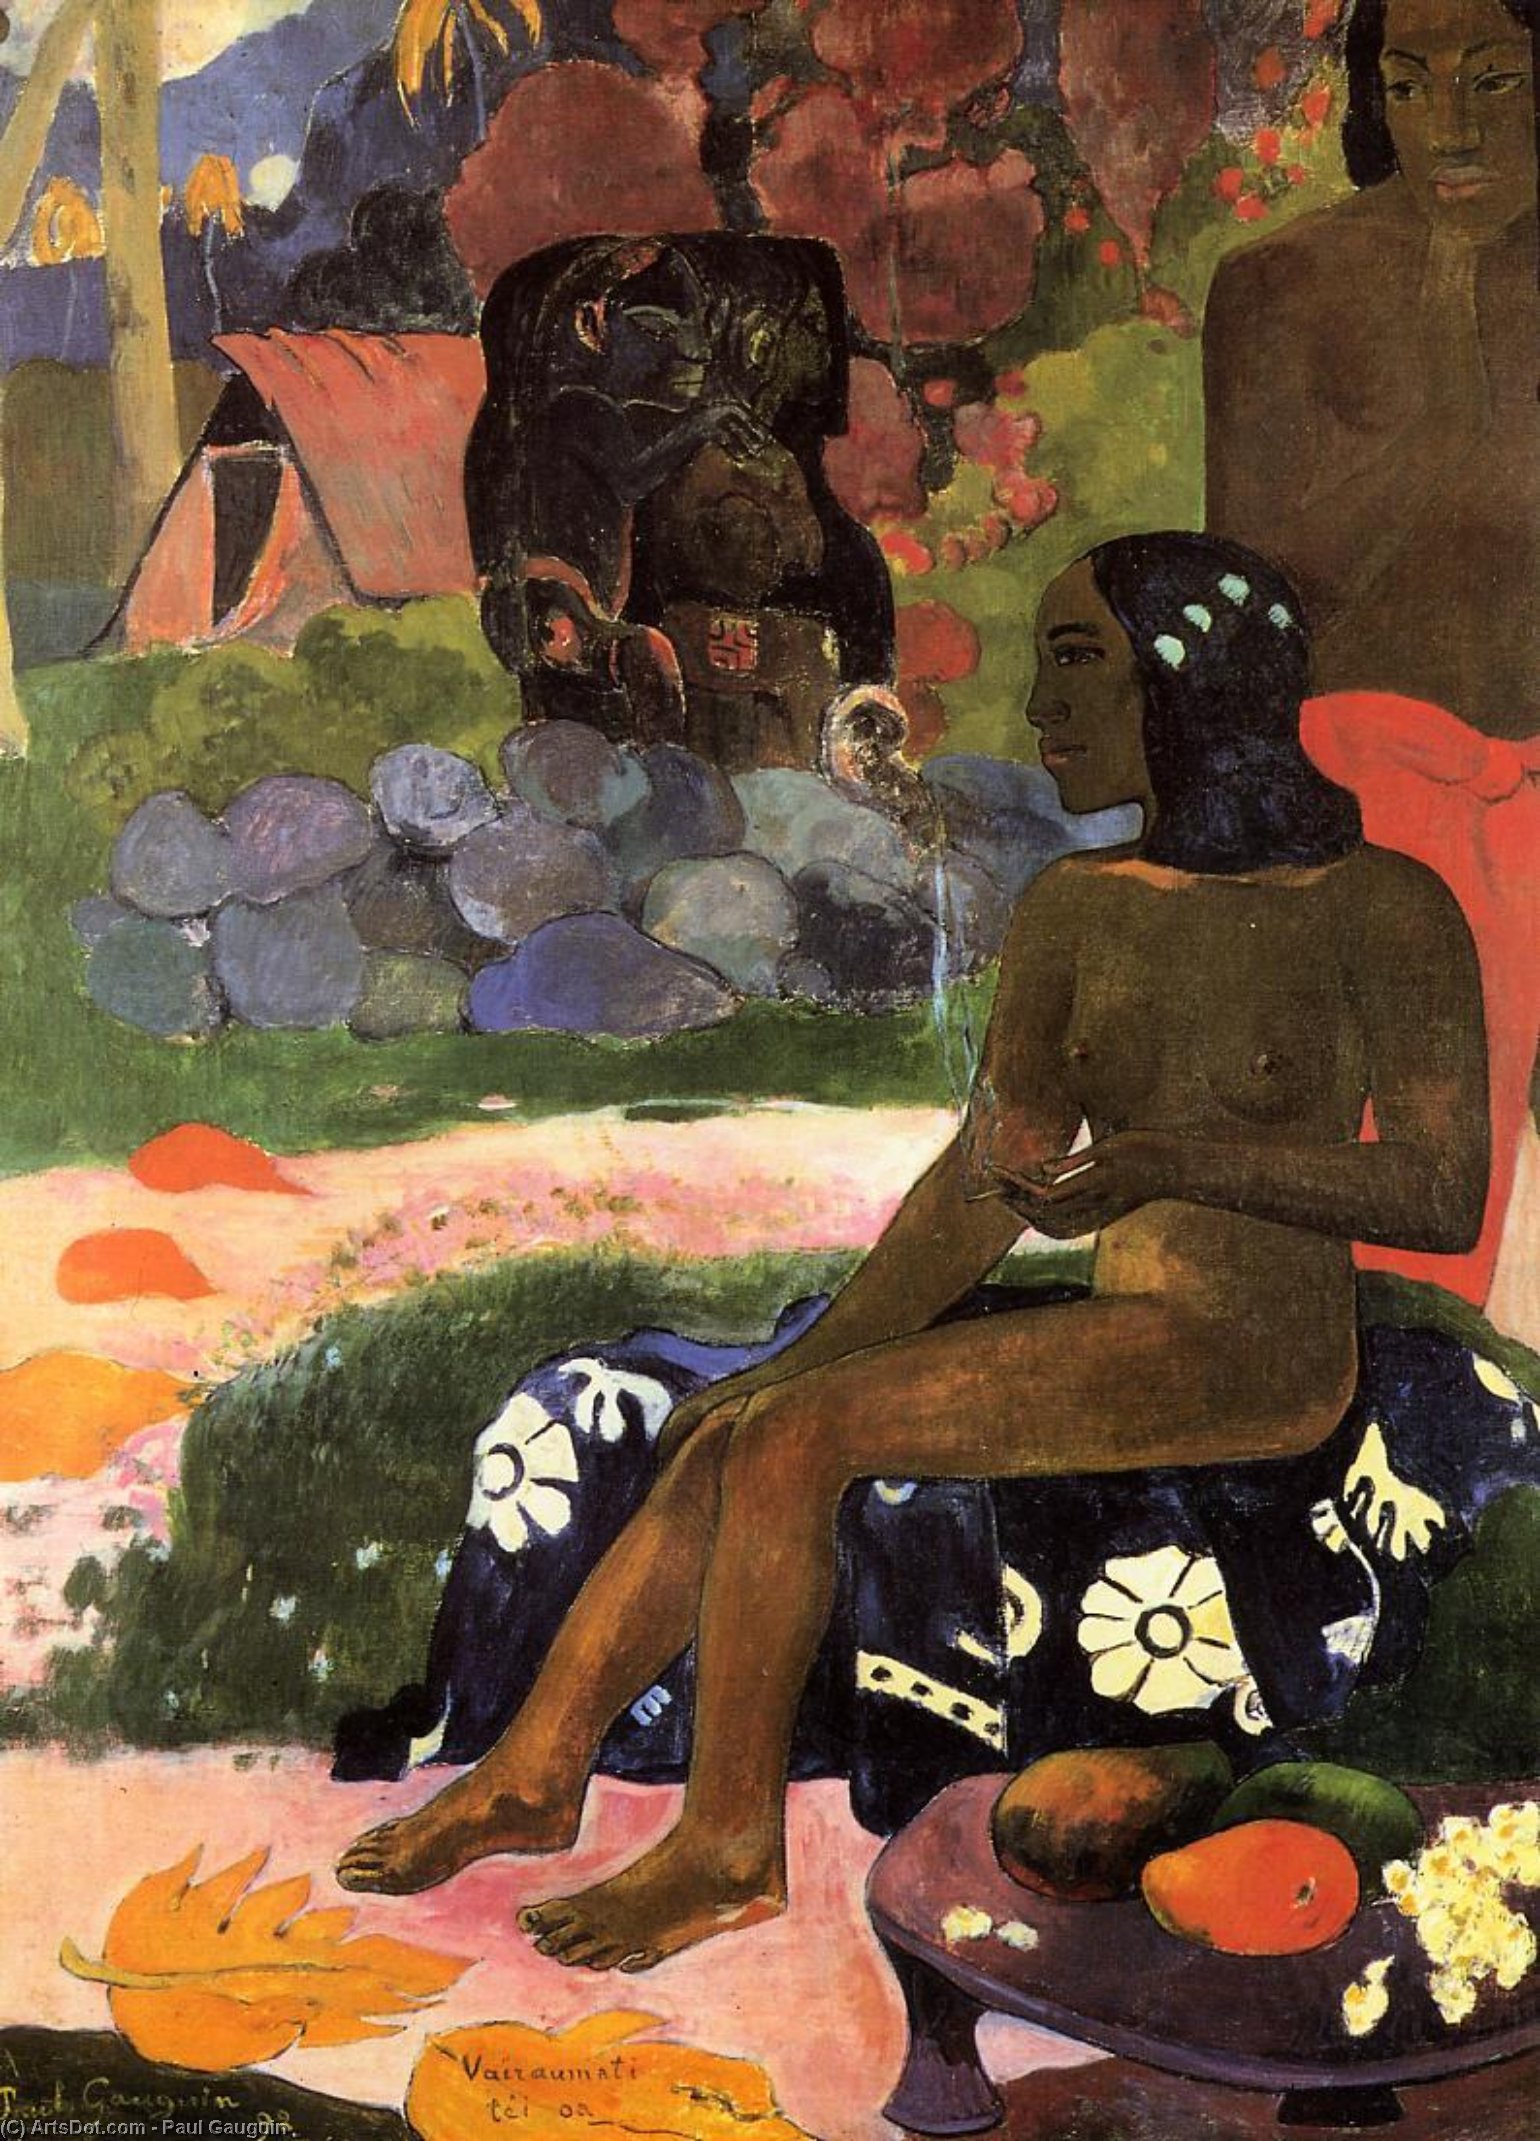 Wikioo.org - Bách khoa toàn thư về mỹ thuật - Vẽ tranh, Tác phẩm nghệ thuật Paul Gauguin - Viaraumati Tei Oa (also known as Her Name is Viaraumati)